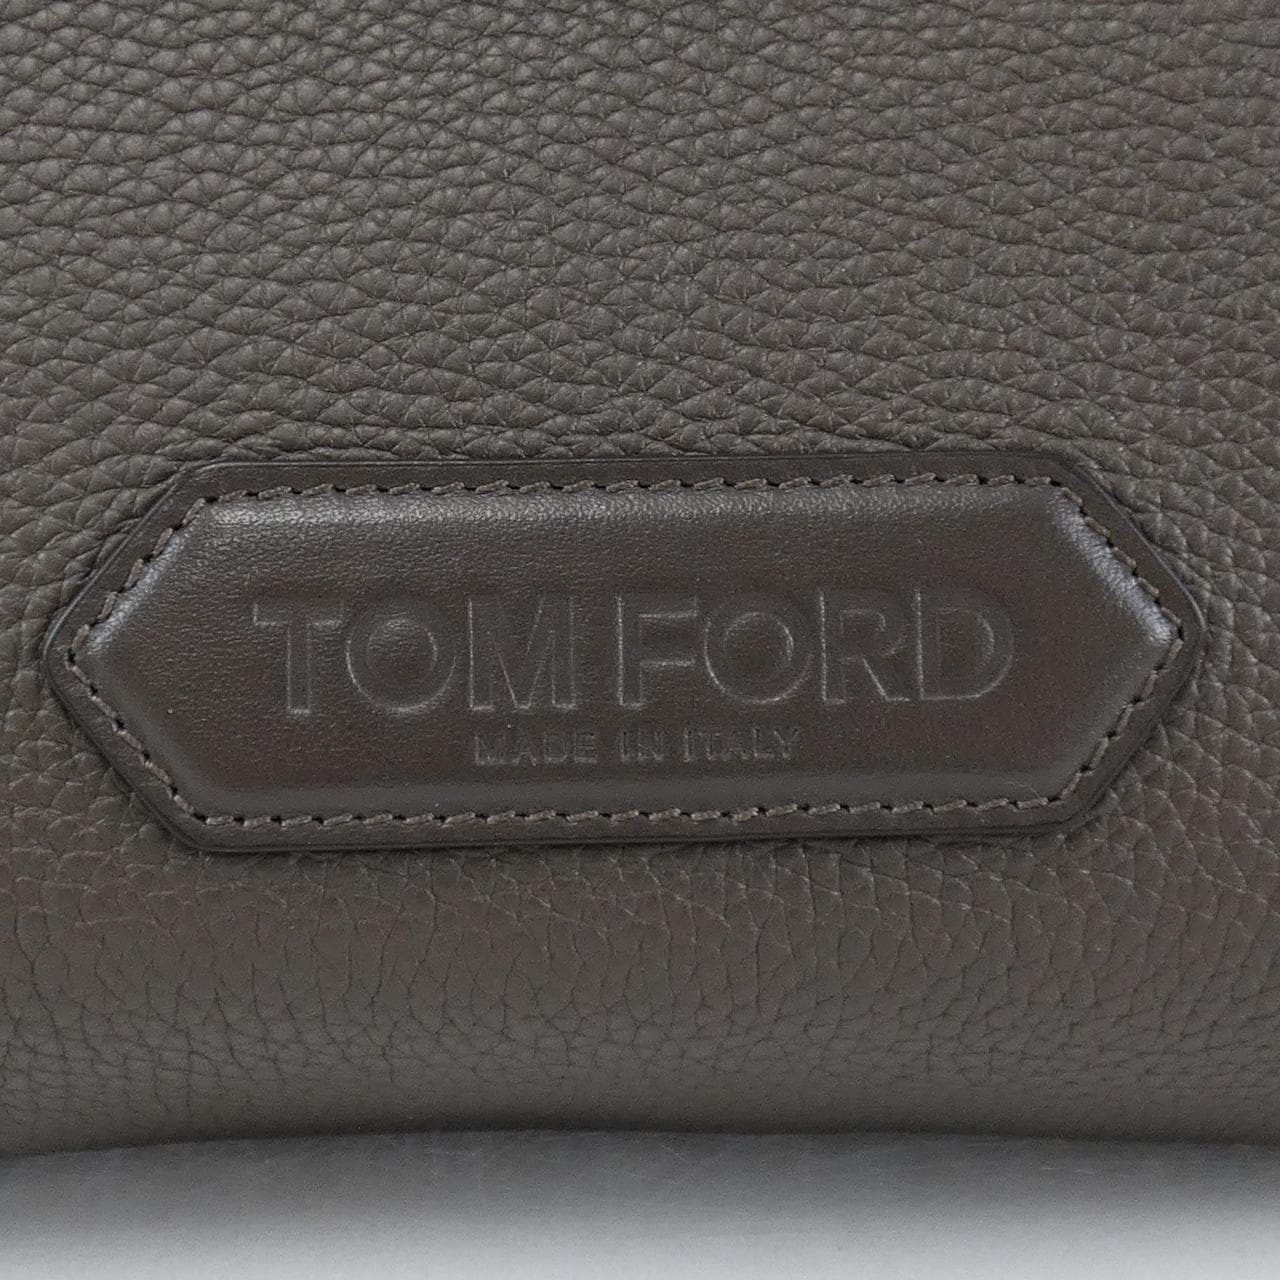 トムフォード TOM FORD BAG